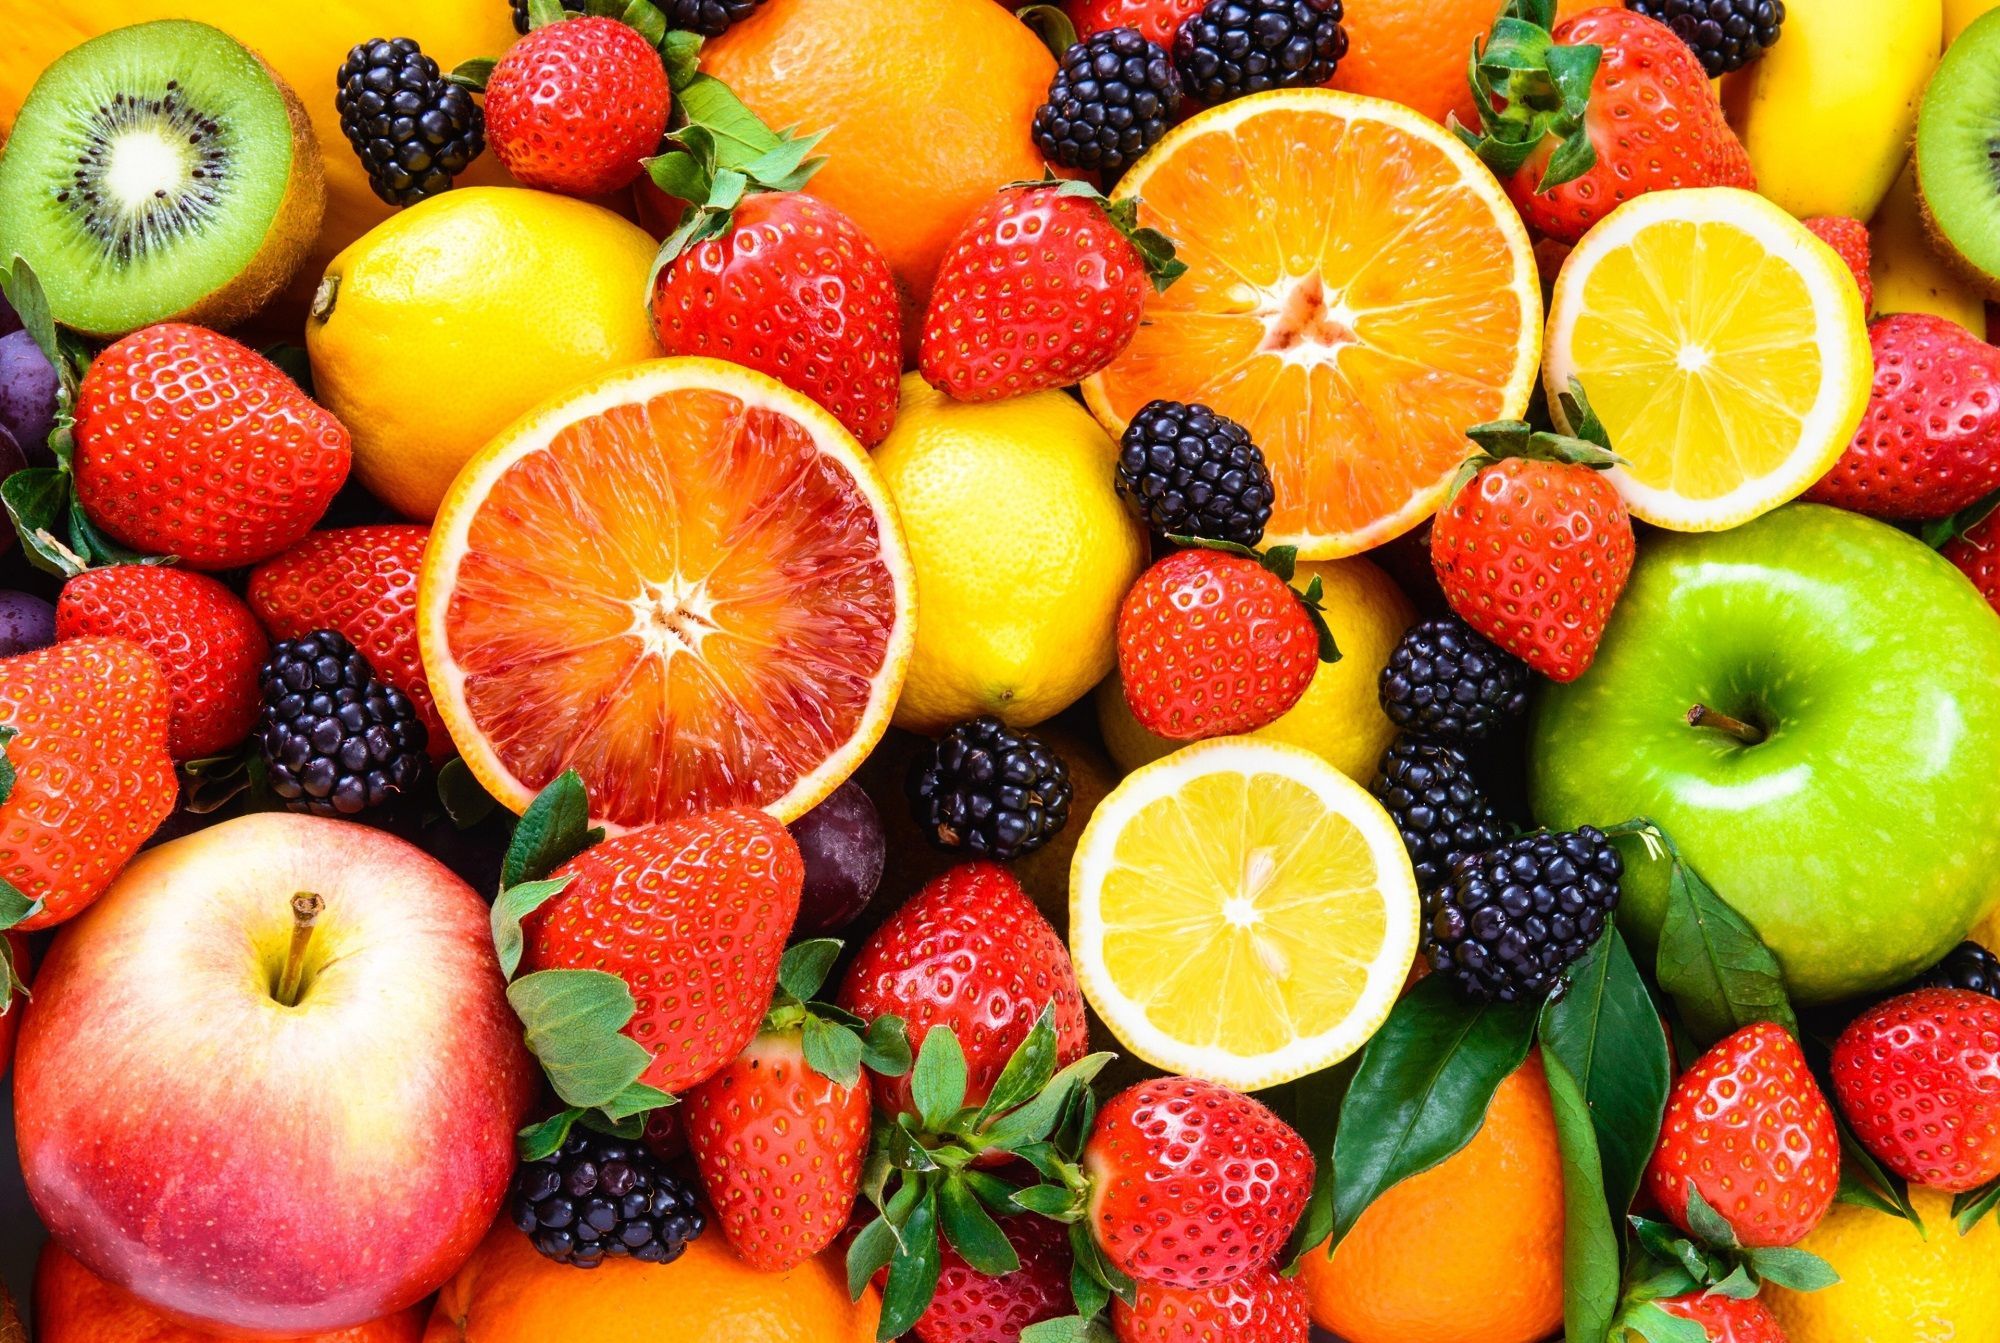 Цены в Украине: ягоды и фрукты в начале июня 2020 подорожали